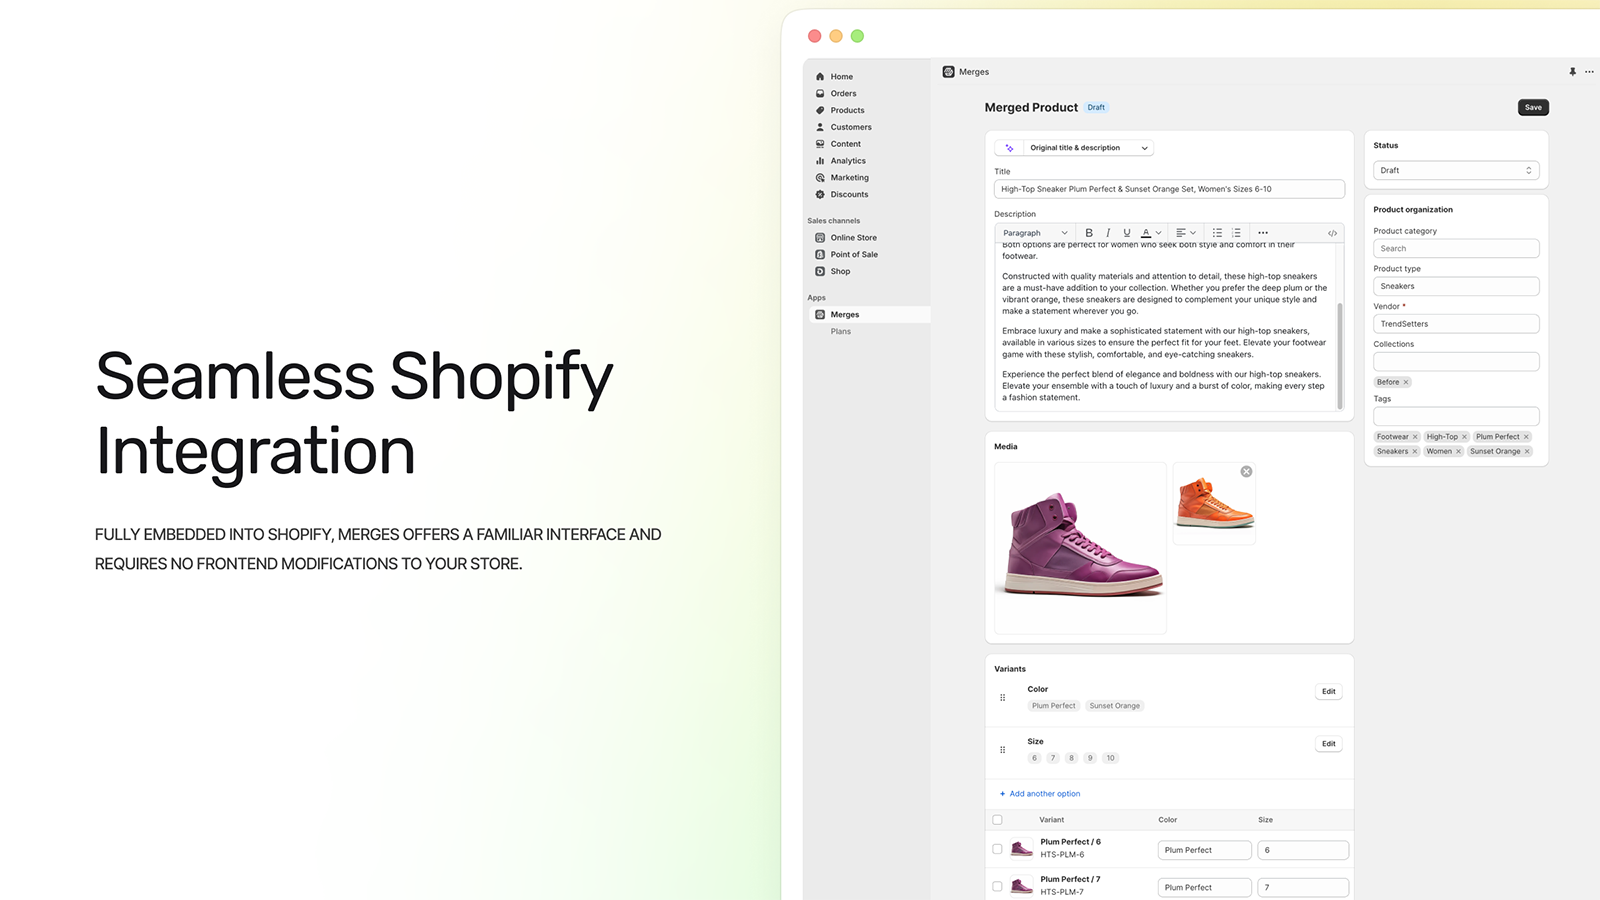 Application entièrement intégrée dans l'expérience Shopify